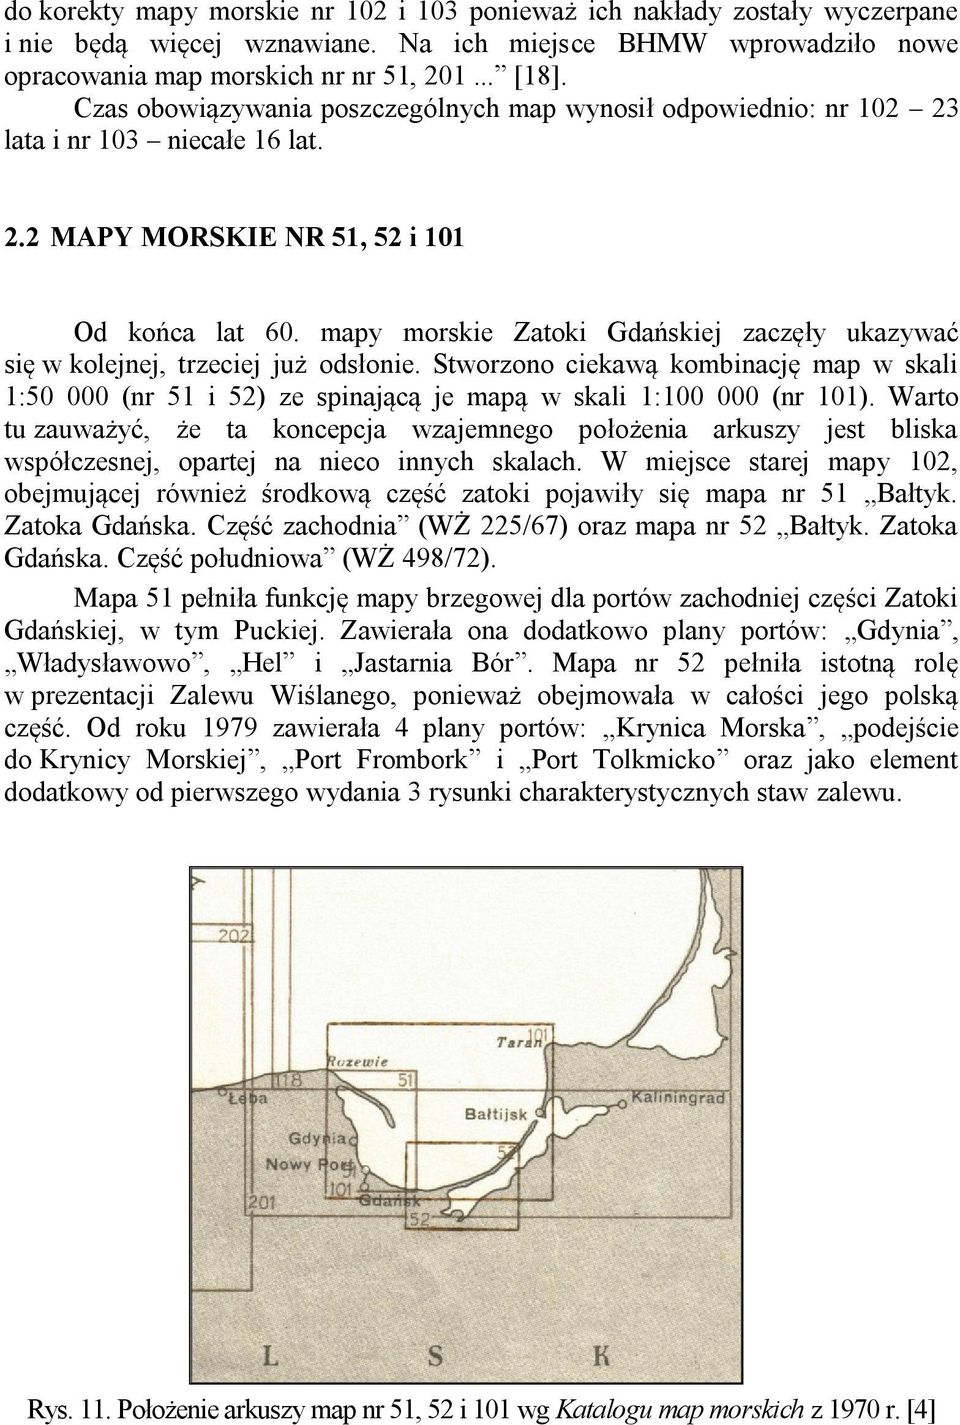 mapy morskie Zatoki Gdańskiej zaczęły ukazywać się w kolejnej, trzeciej już odsłonie. Stworzono ciekawą kombinację map w skali 1:50 000 (nr 51 i 52) ze spinającą je mapą w skali 1:100 000 (nr 101).